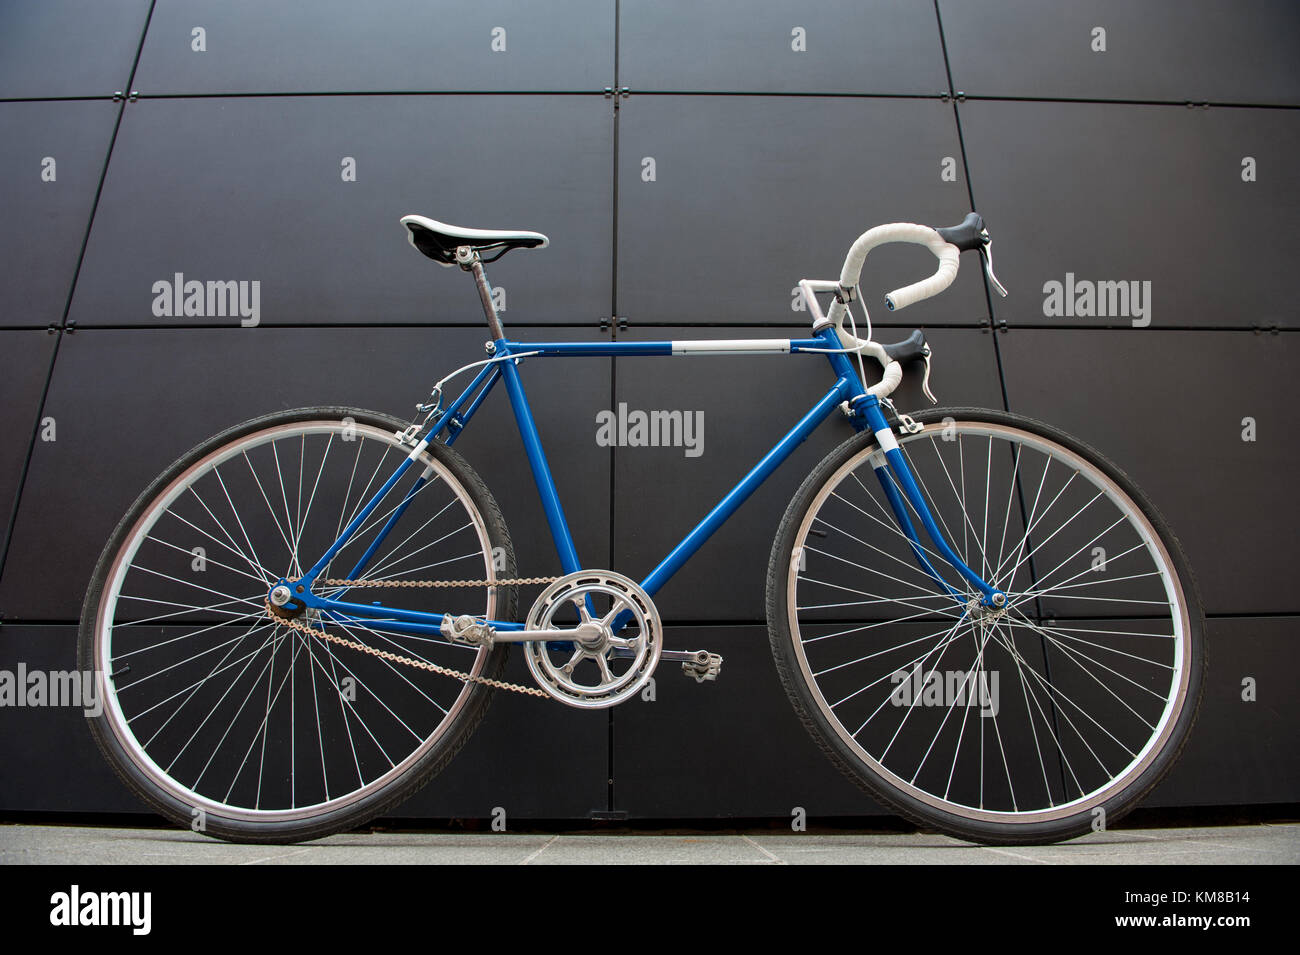 Vintage Blau und Weiße Stadt Fahrrad auf eine schwarze Wand. Rennrad  Stockfotografie - Alamy